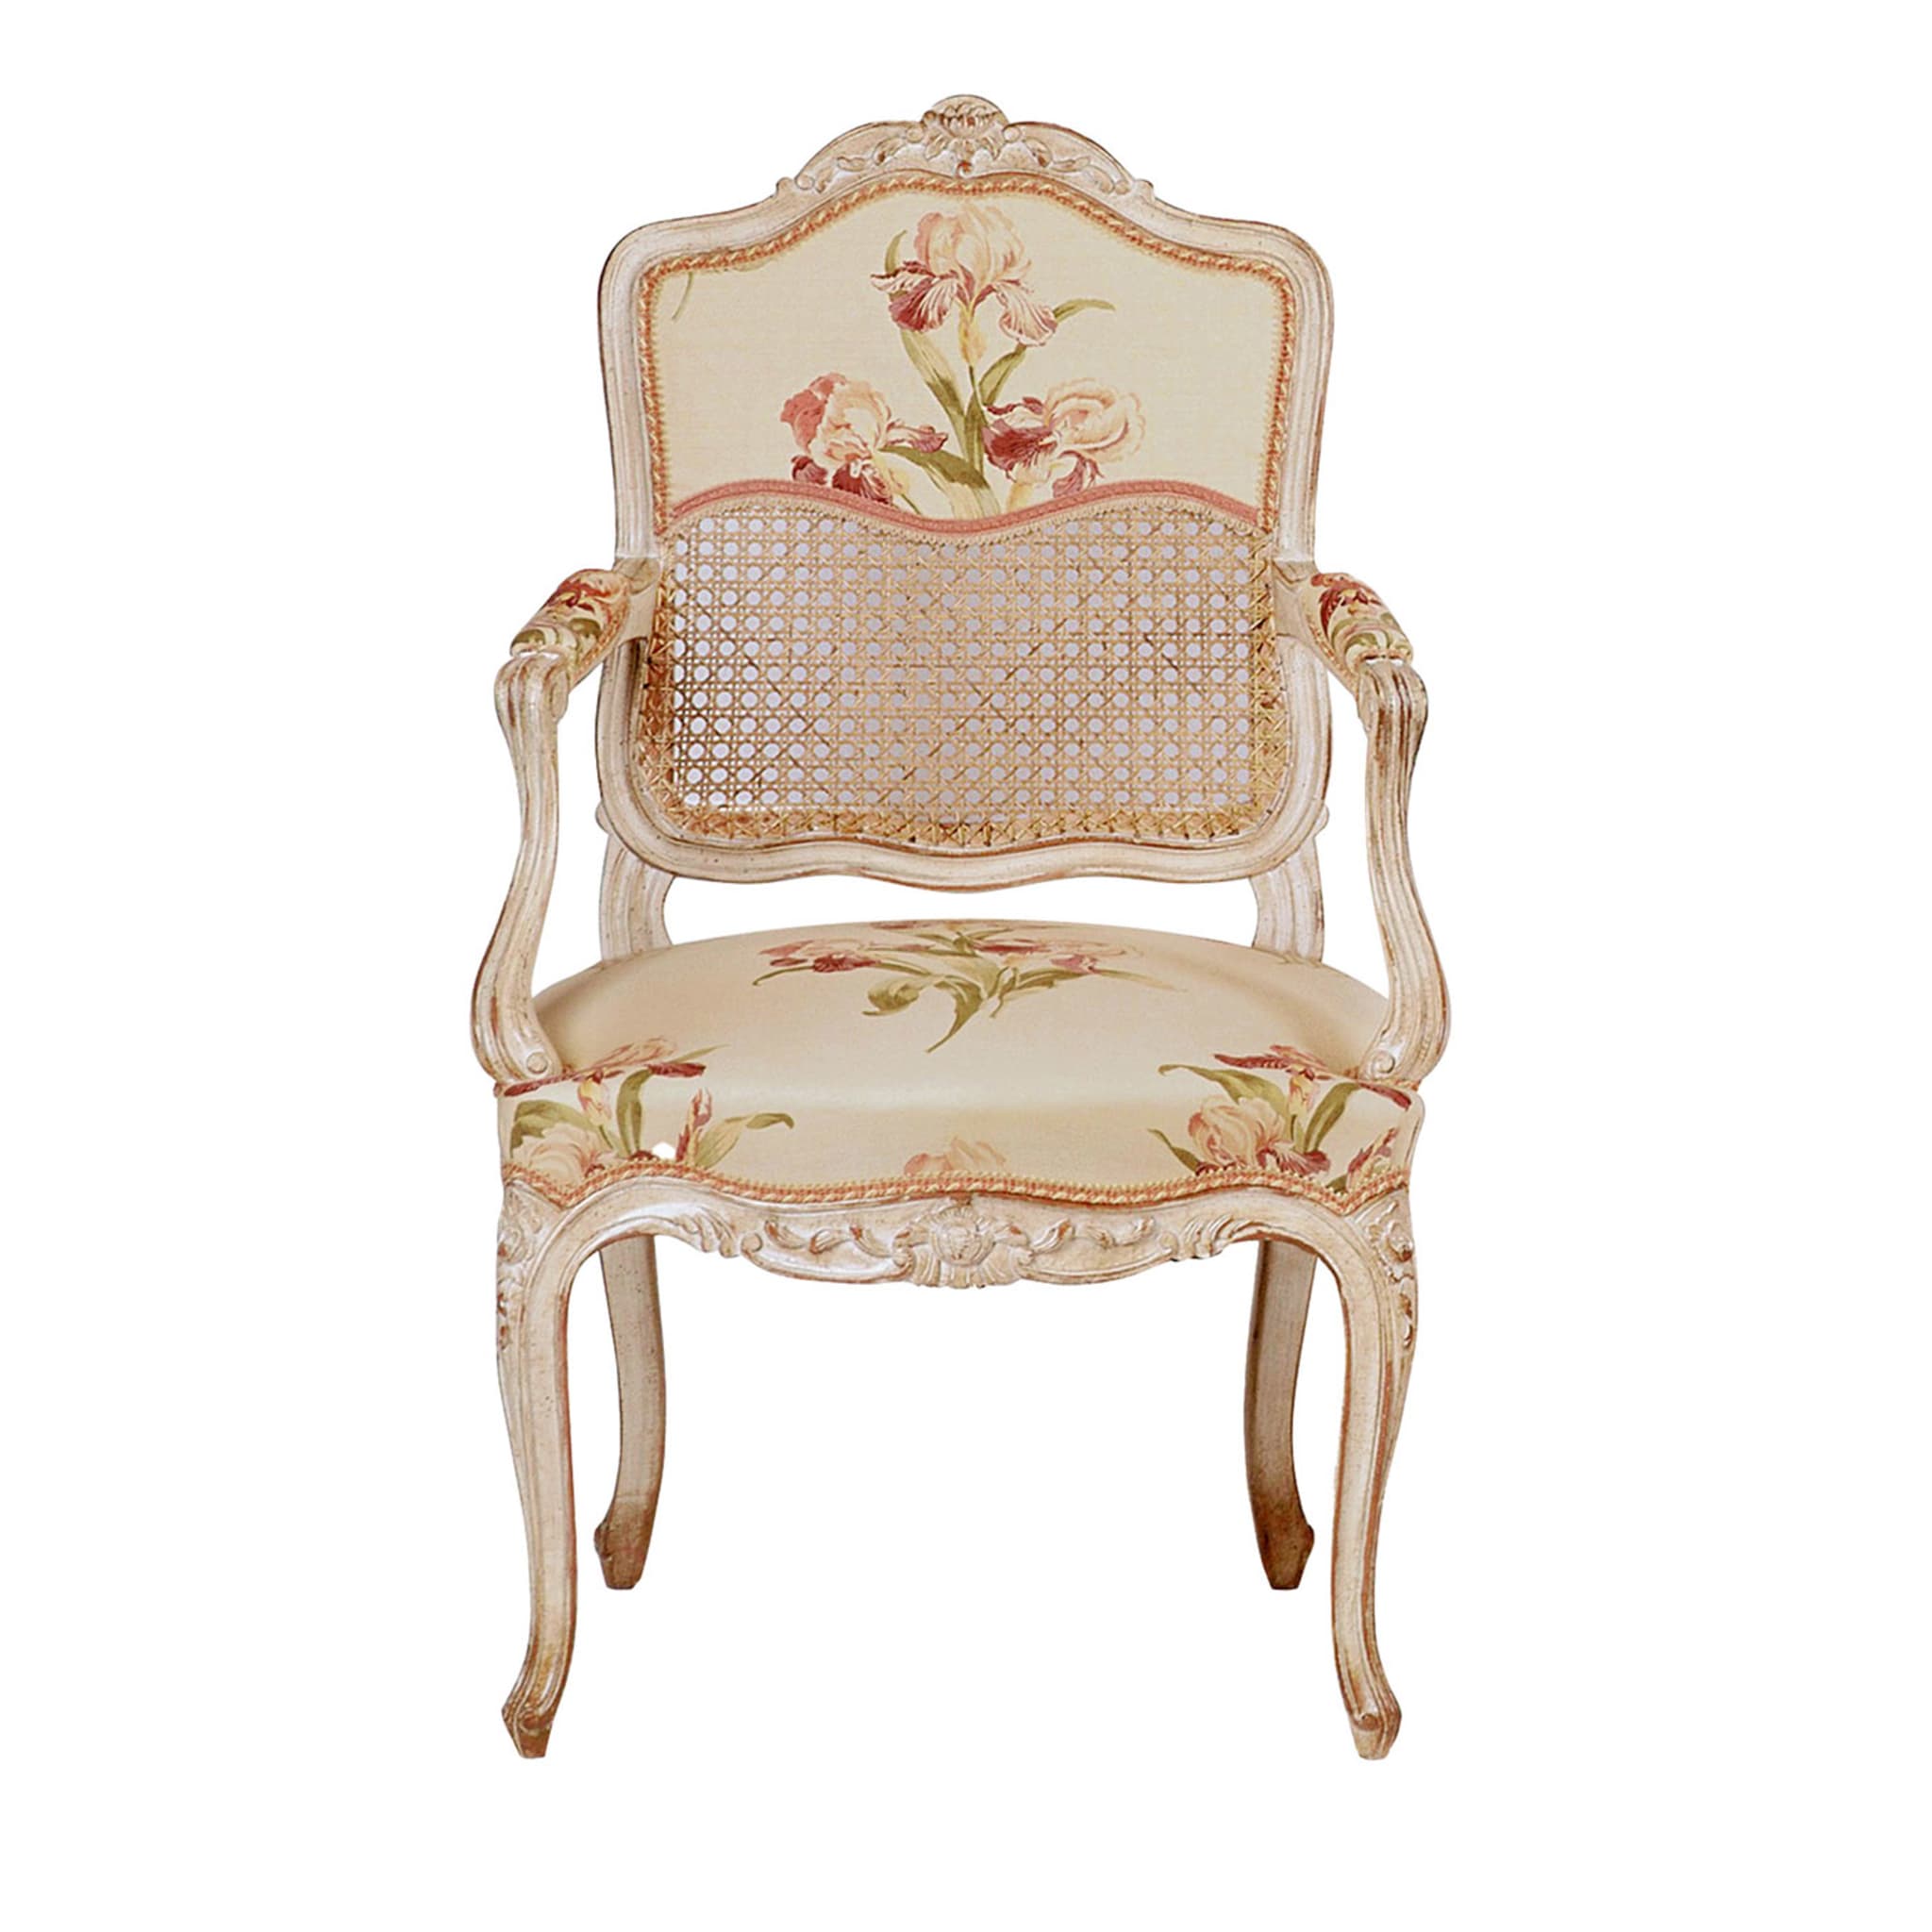 Weißer Stuhl im Louis XV-Stil mit Blumenmuster #1 - Hauptansicht